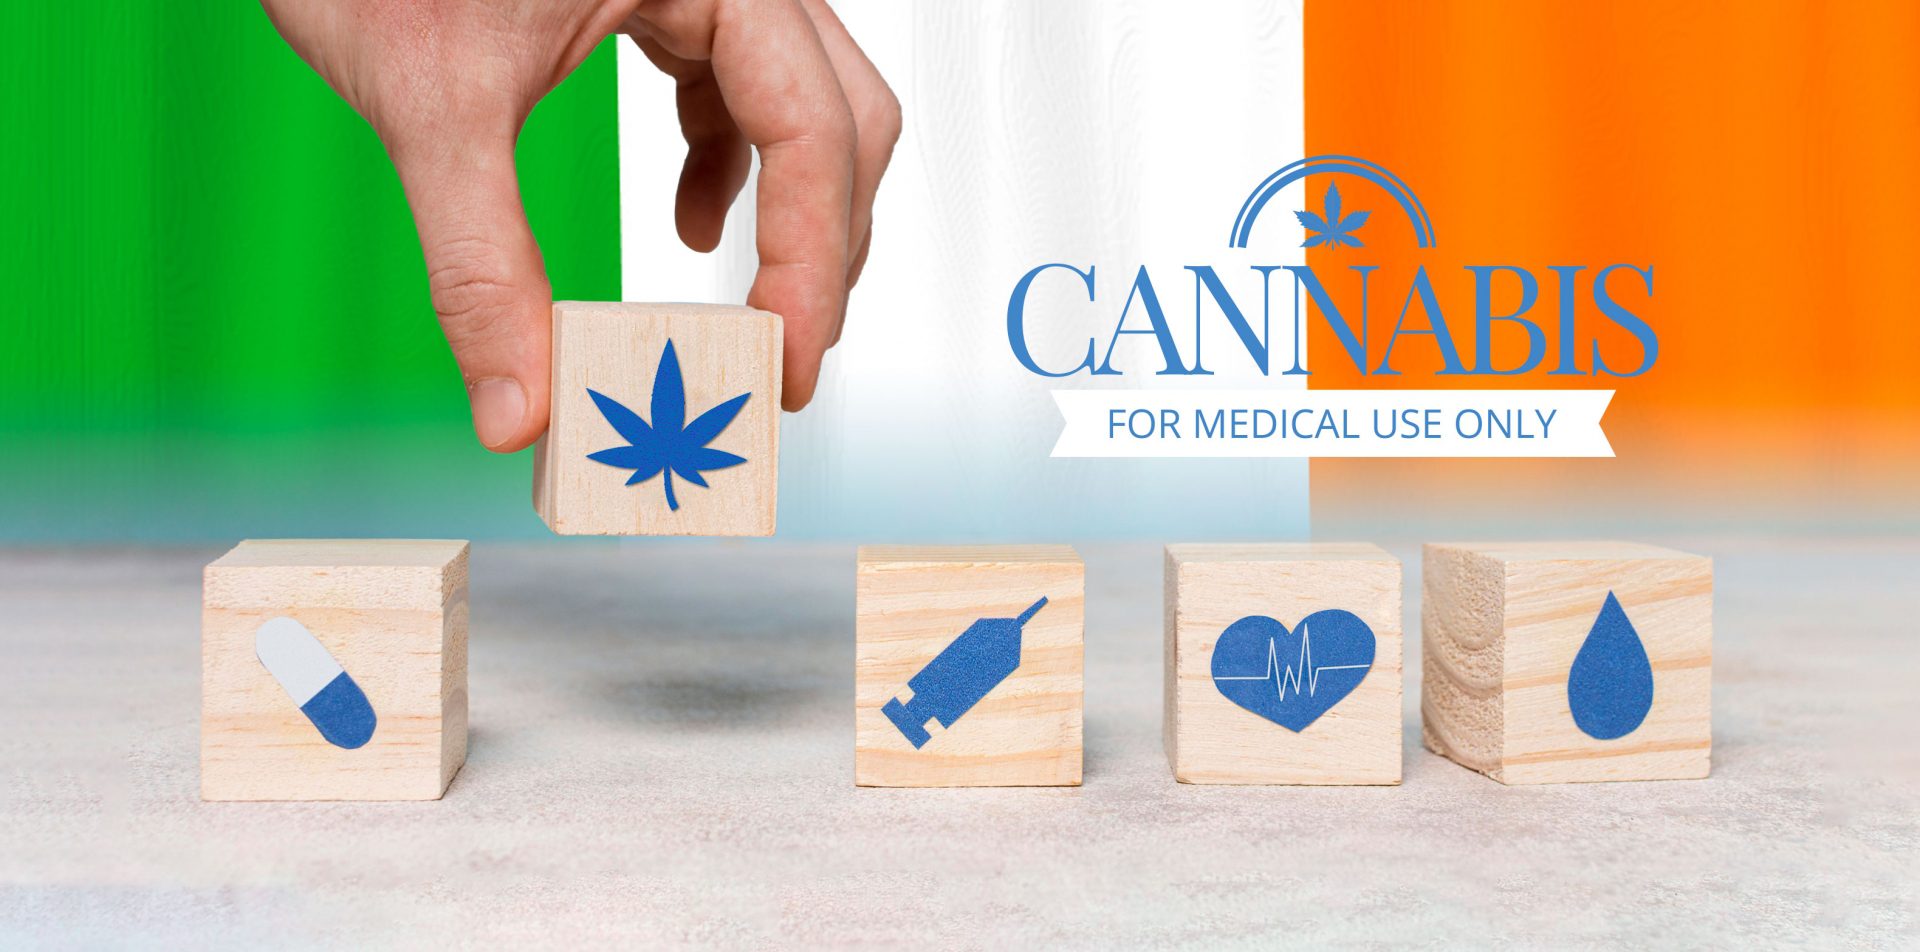 Irlanda da luz verde al cannabis medicinal con receta médica